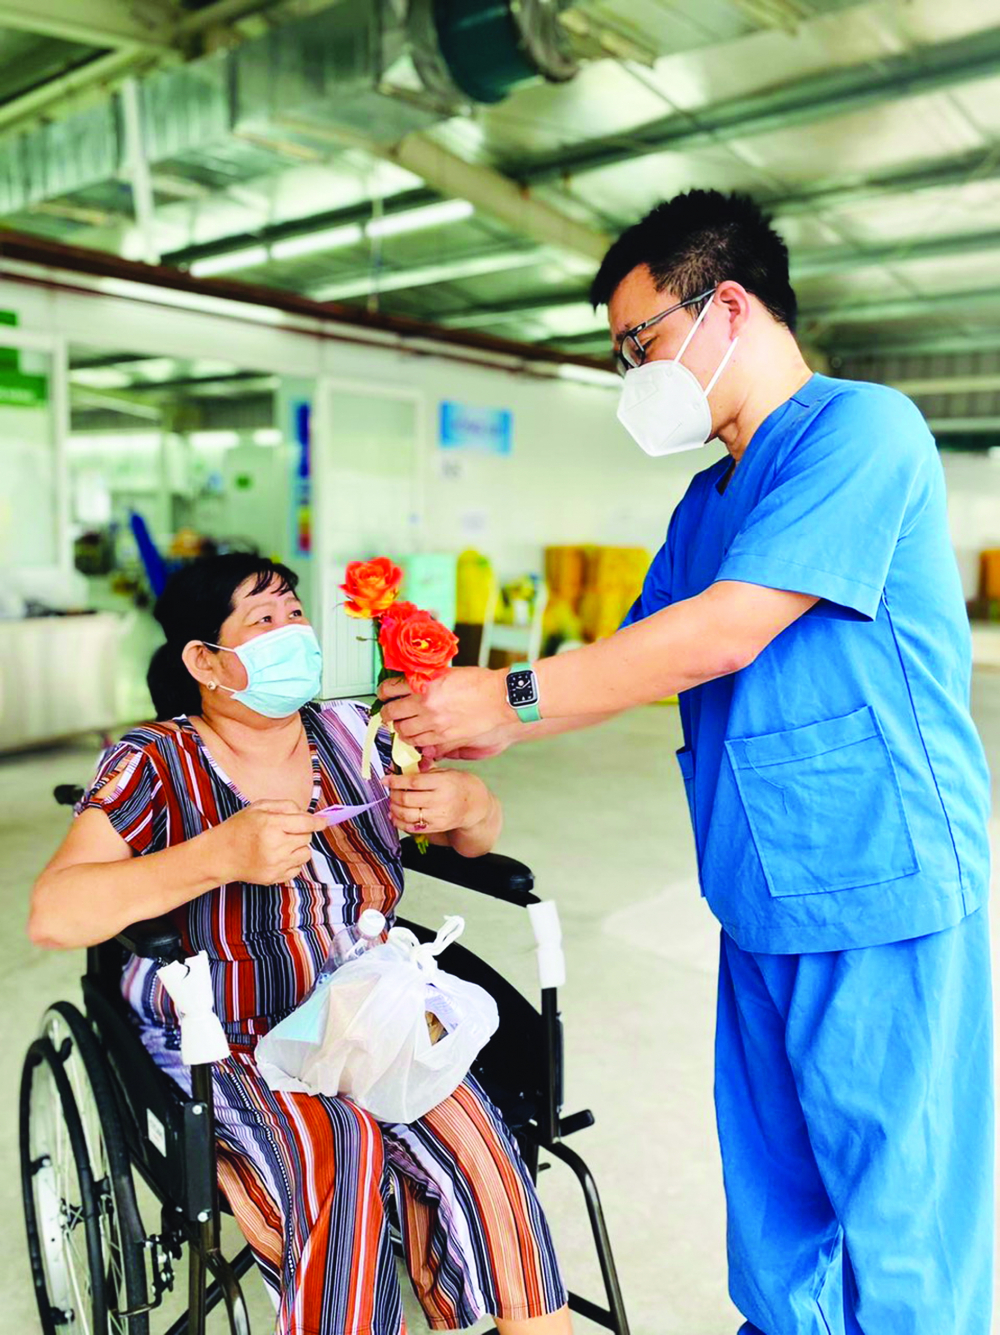 Bác sĩ Lê Minh Khôi, Bệnh viện Đại học Y Dược TP.HCM, tặng hoa cho nữ bệnh nhân được xuất viện đúng vào ngày 20/10 - ẢNH: BÁC SĨ CUNG CẤP